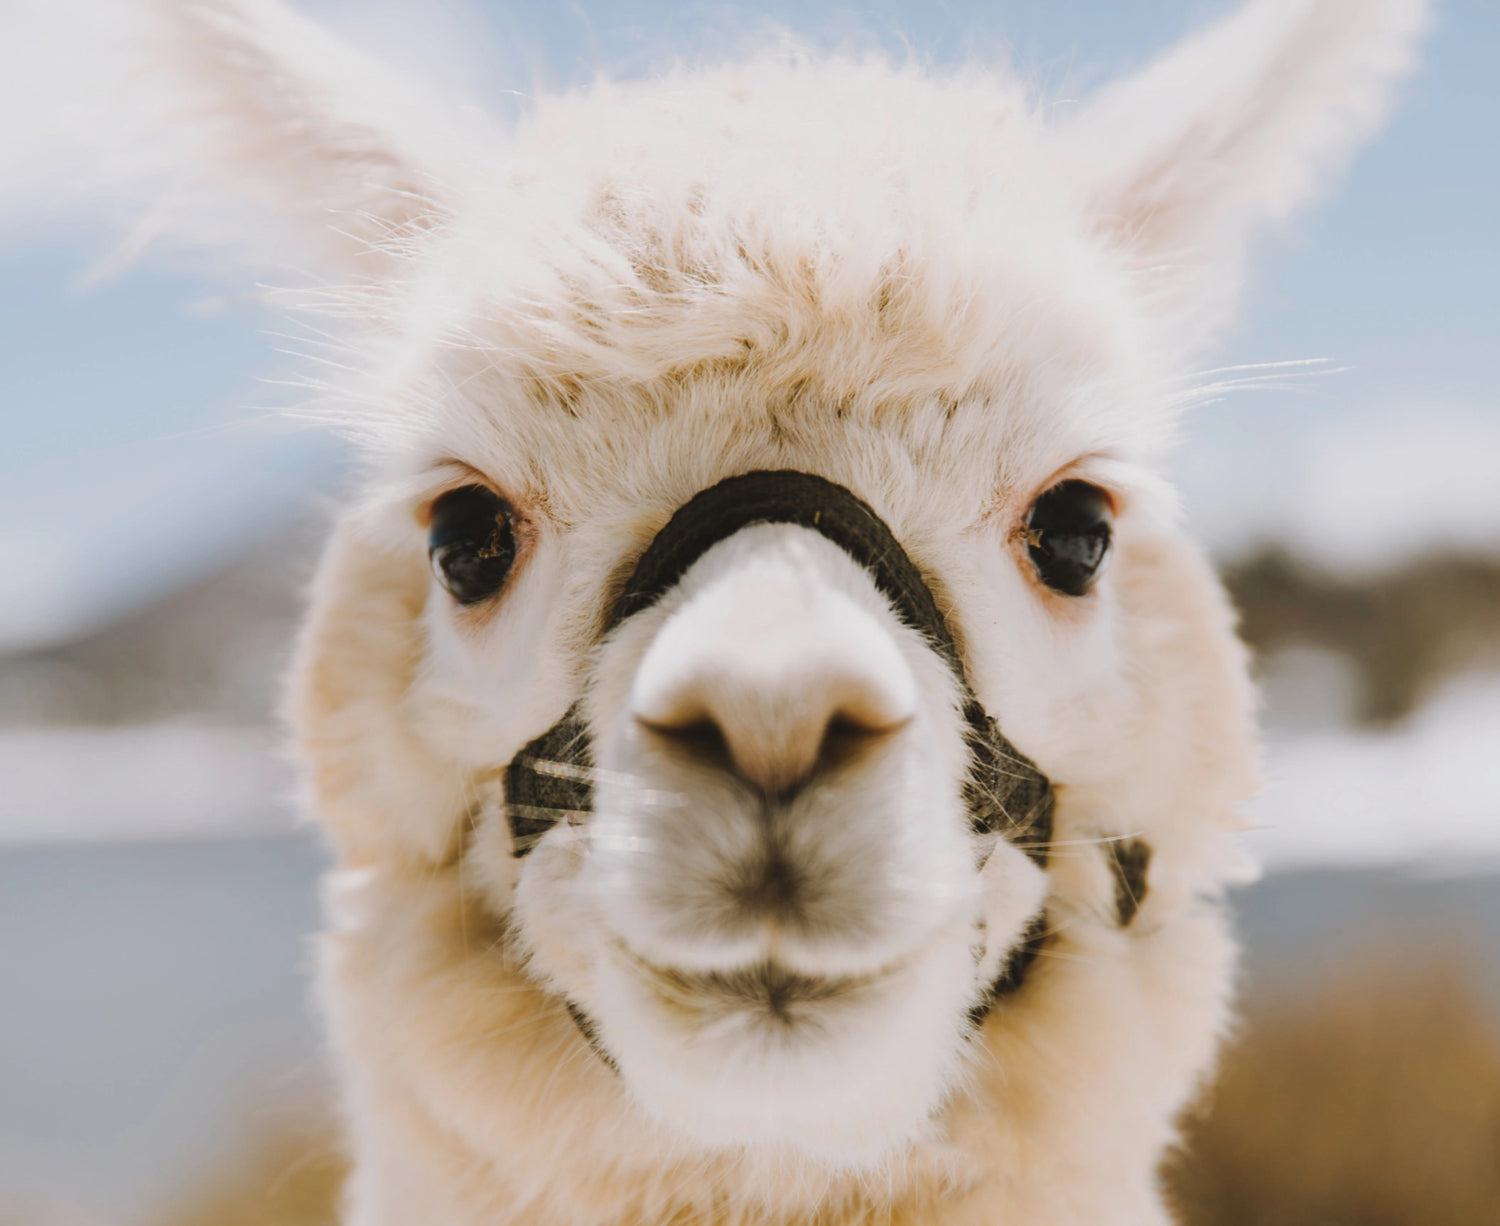 Fluffy white alpaca face 